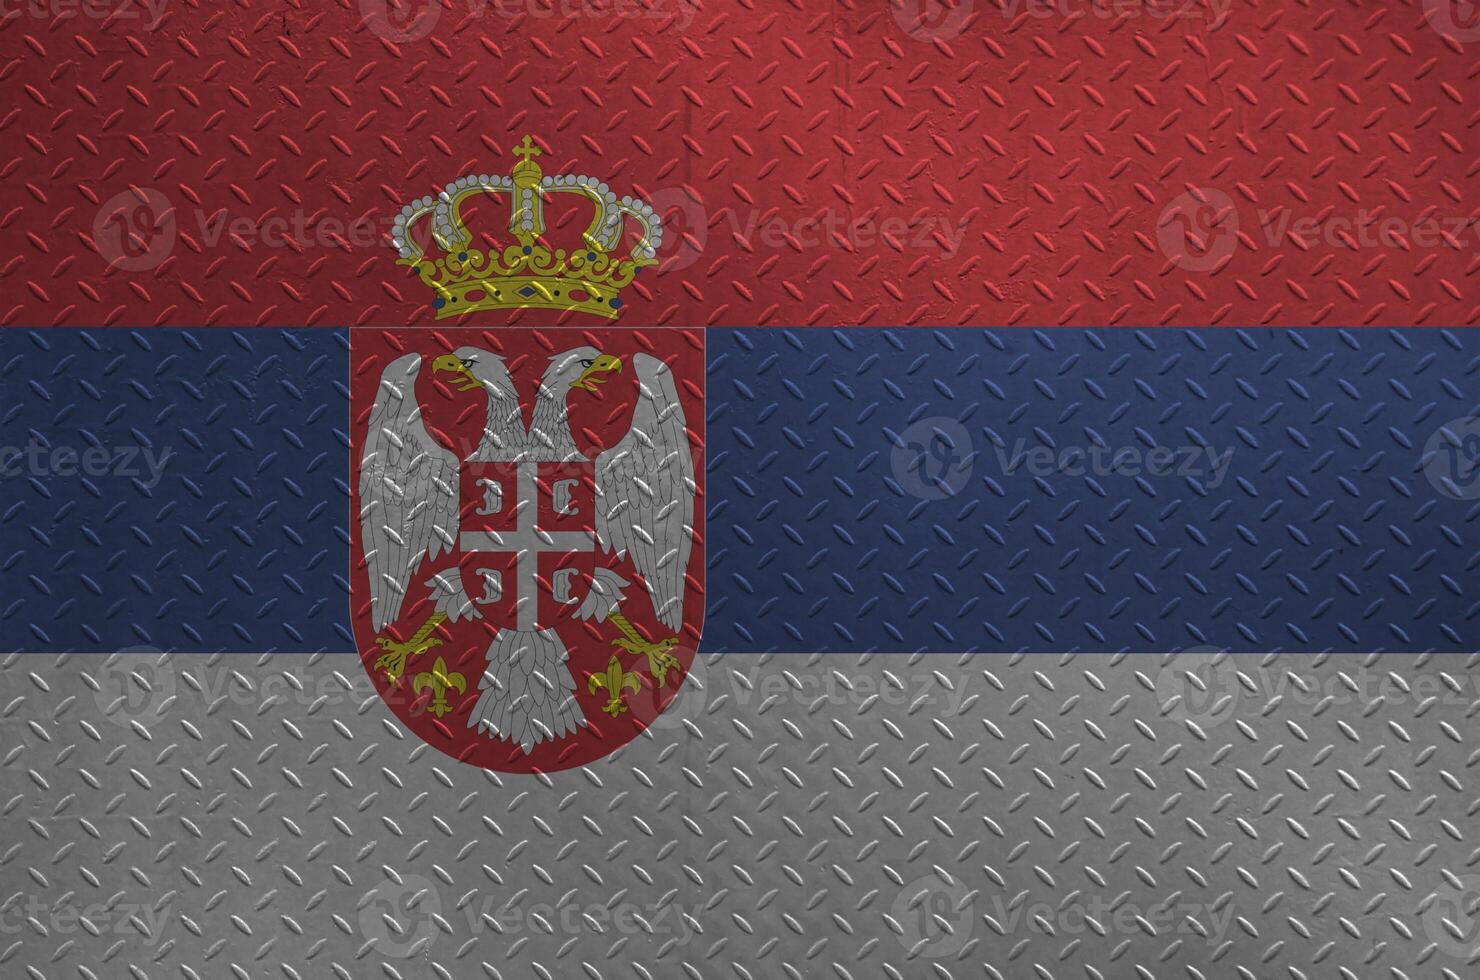 serbia flagga avbildad i måla färger på gammal borstat metall tallrik eller vägg närbild. texturerad baner på grov bakgrund foto